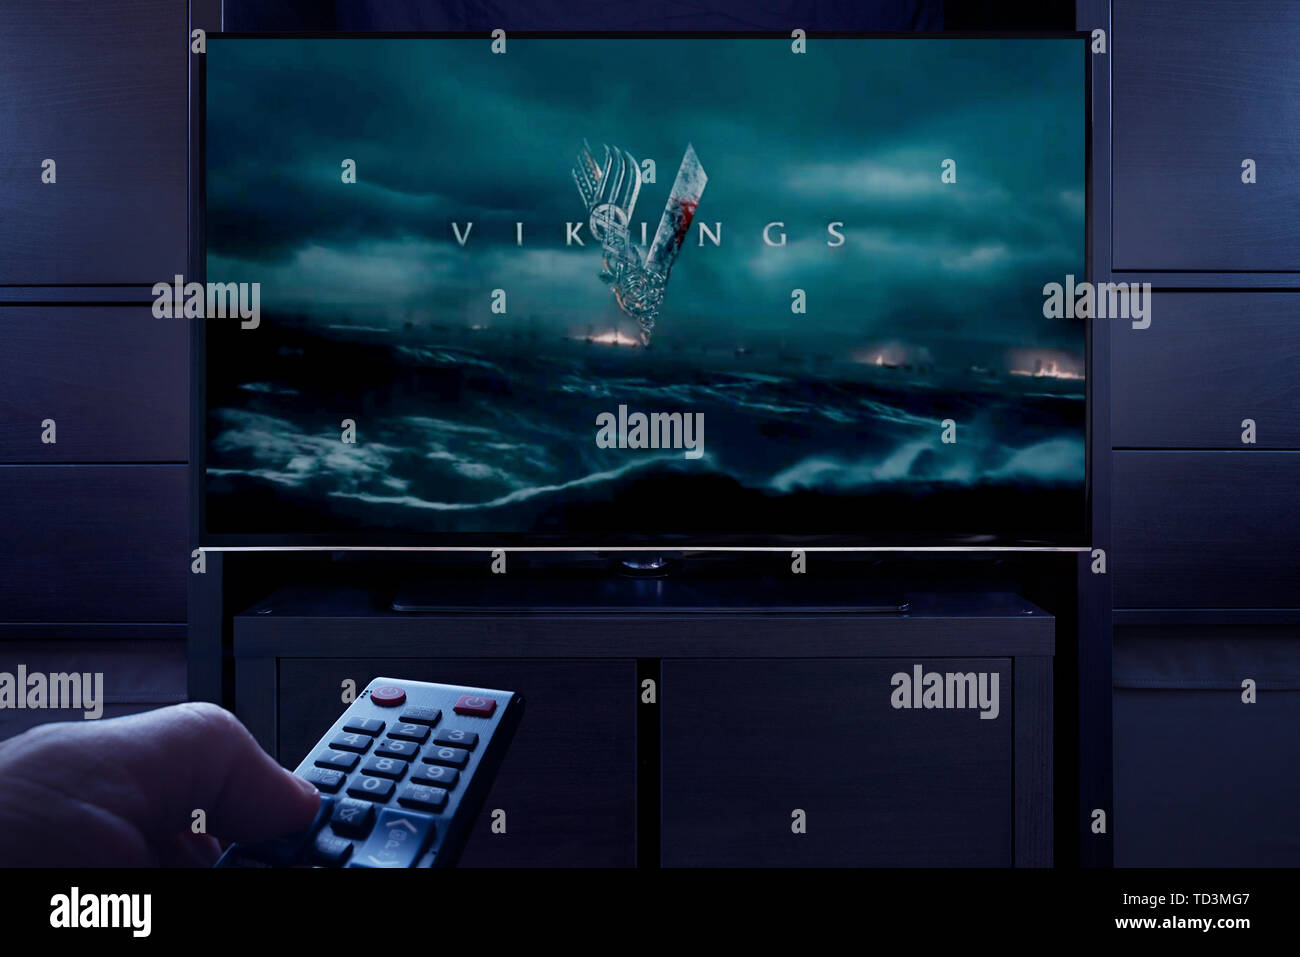 Un homme d'un points TV remote à la télévision qui affiche l'écran de titre principal Vikings (usage éditorial uniquement). Banque D'Images